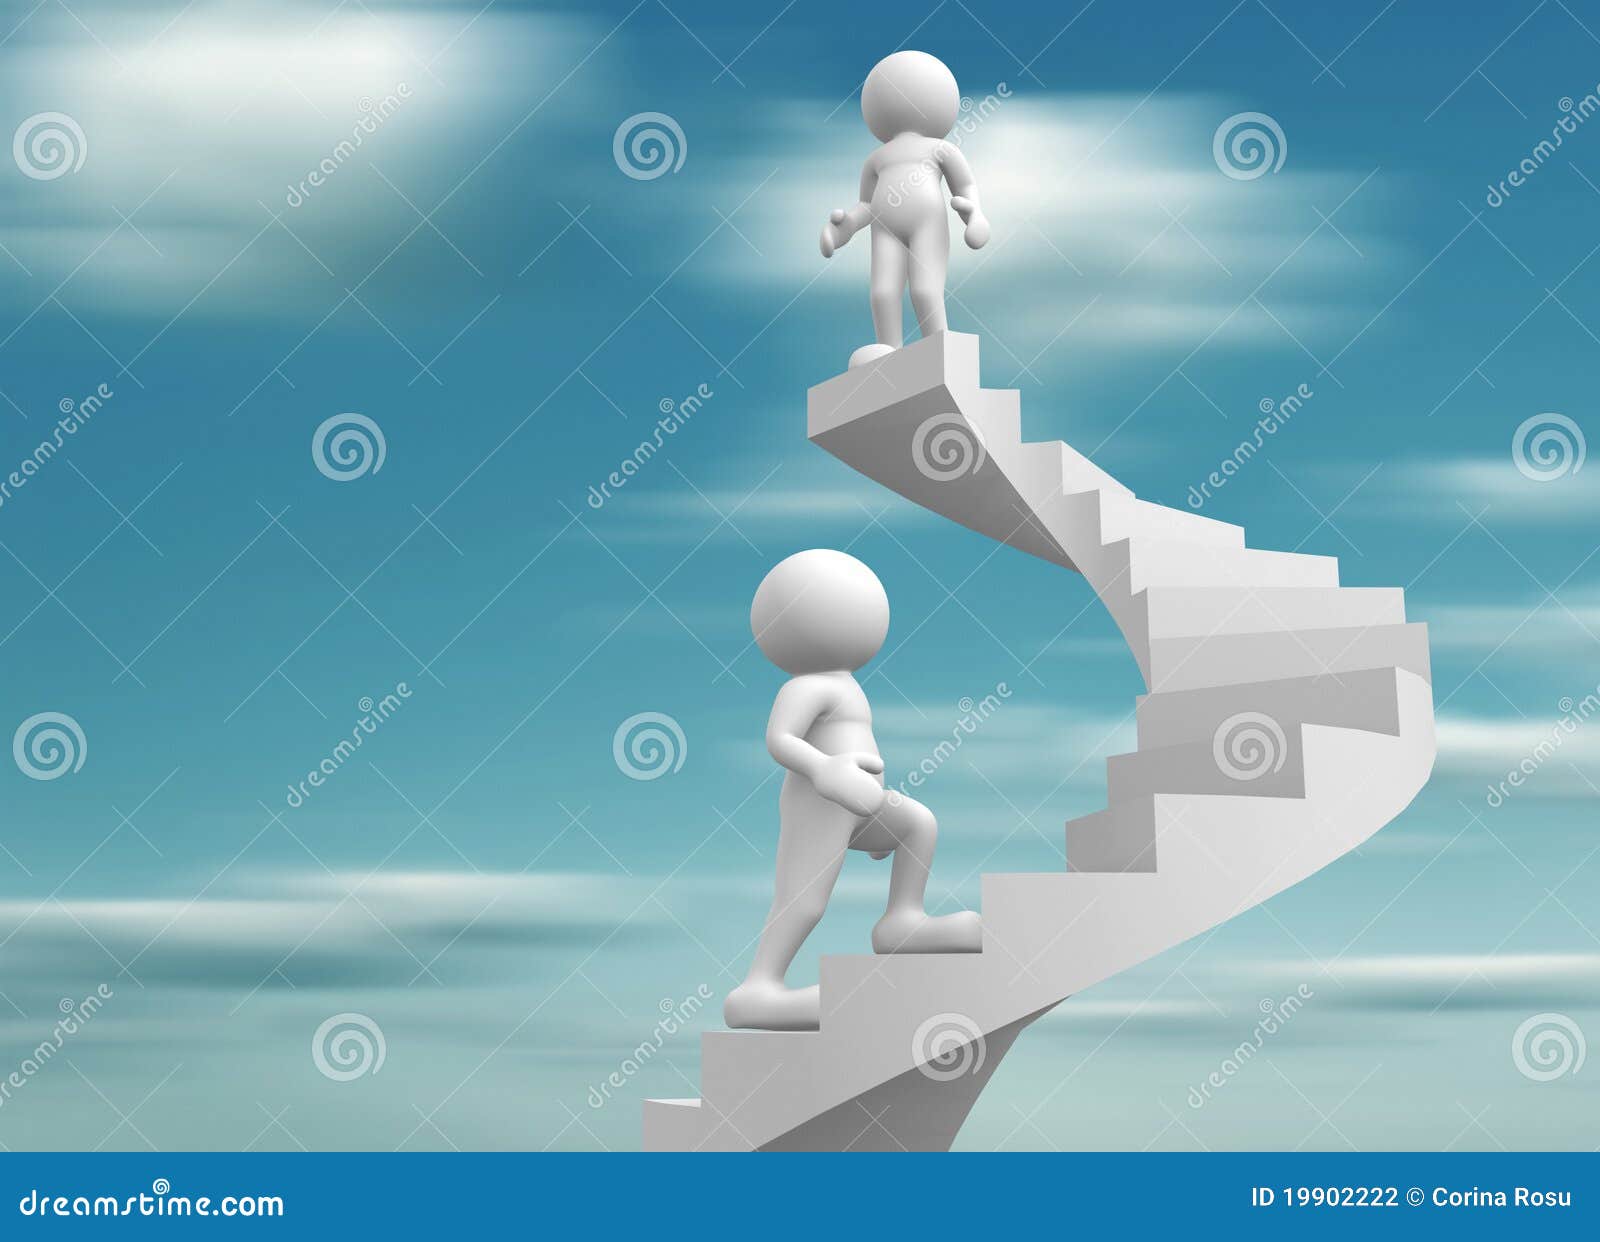 Ступеньки к успеху 2024. Человечек на лестнице успеха. Человечек идет к цели. Человечек на вершине лестницы. Лестница вверх к успеху.